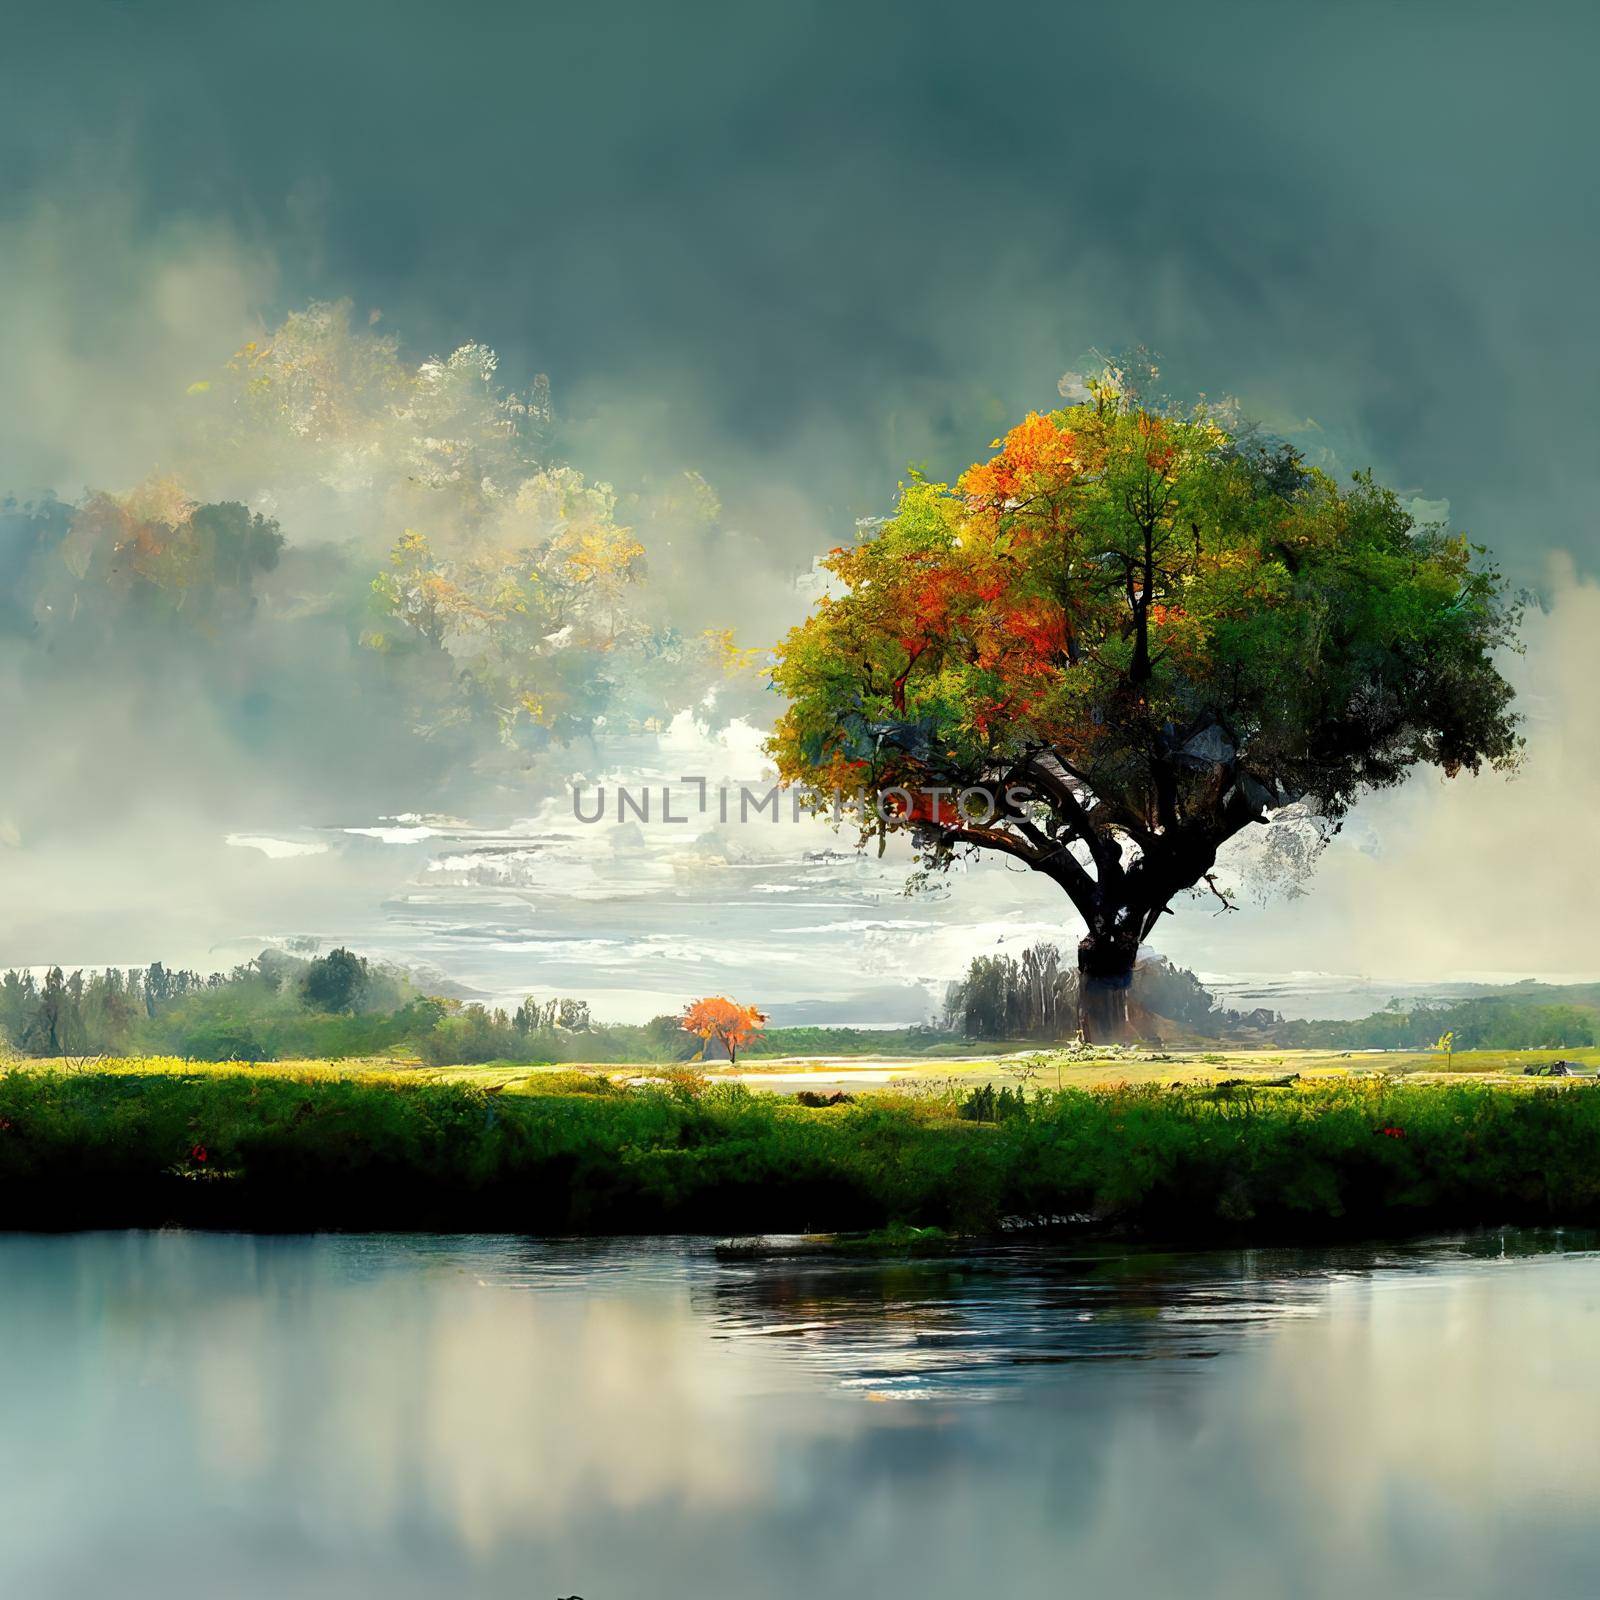 Digital painting of a peaceful nature scene, digital art, Illustration